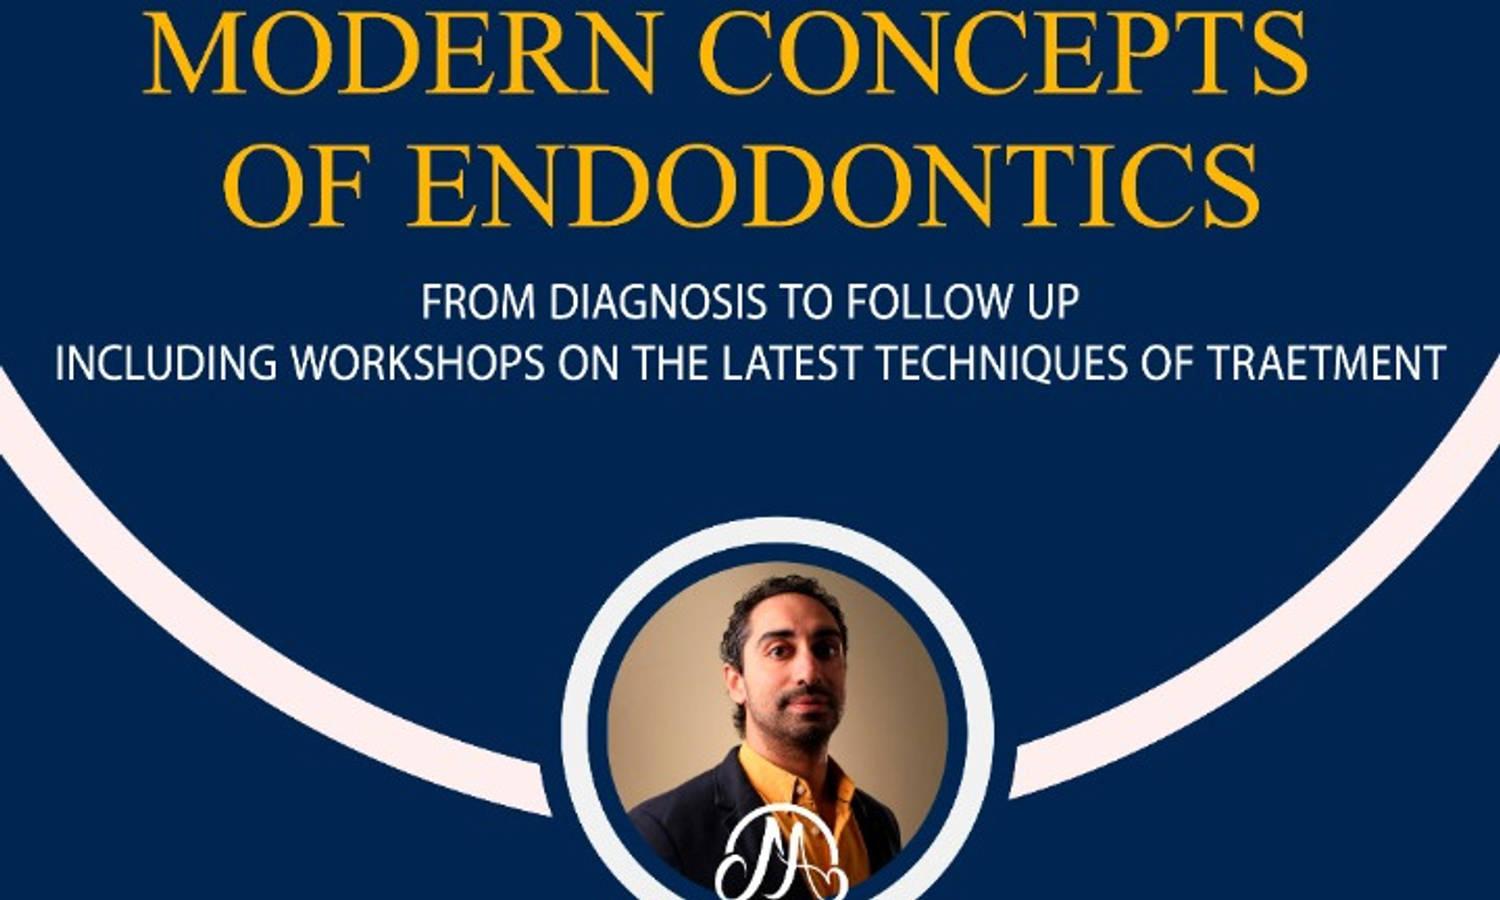 Modern Concepts of Endodontics Course